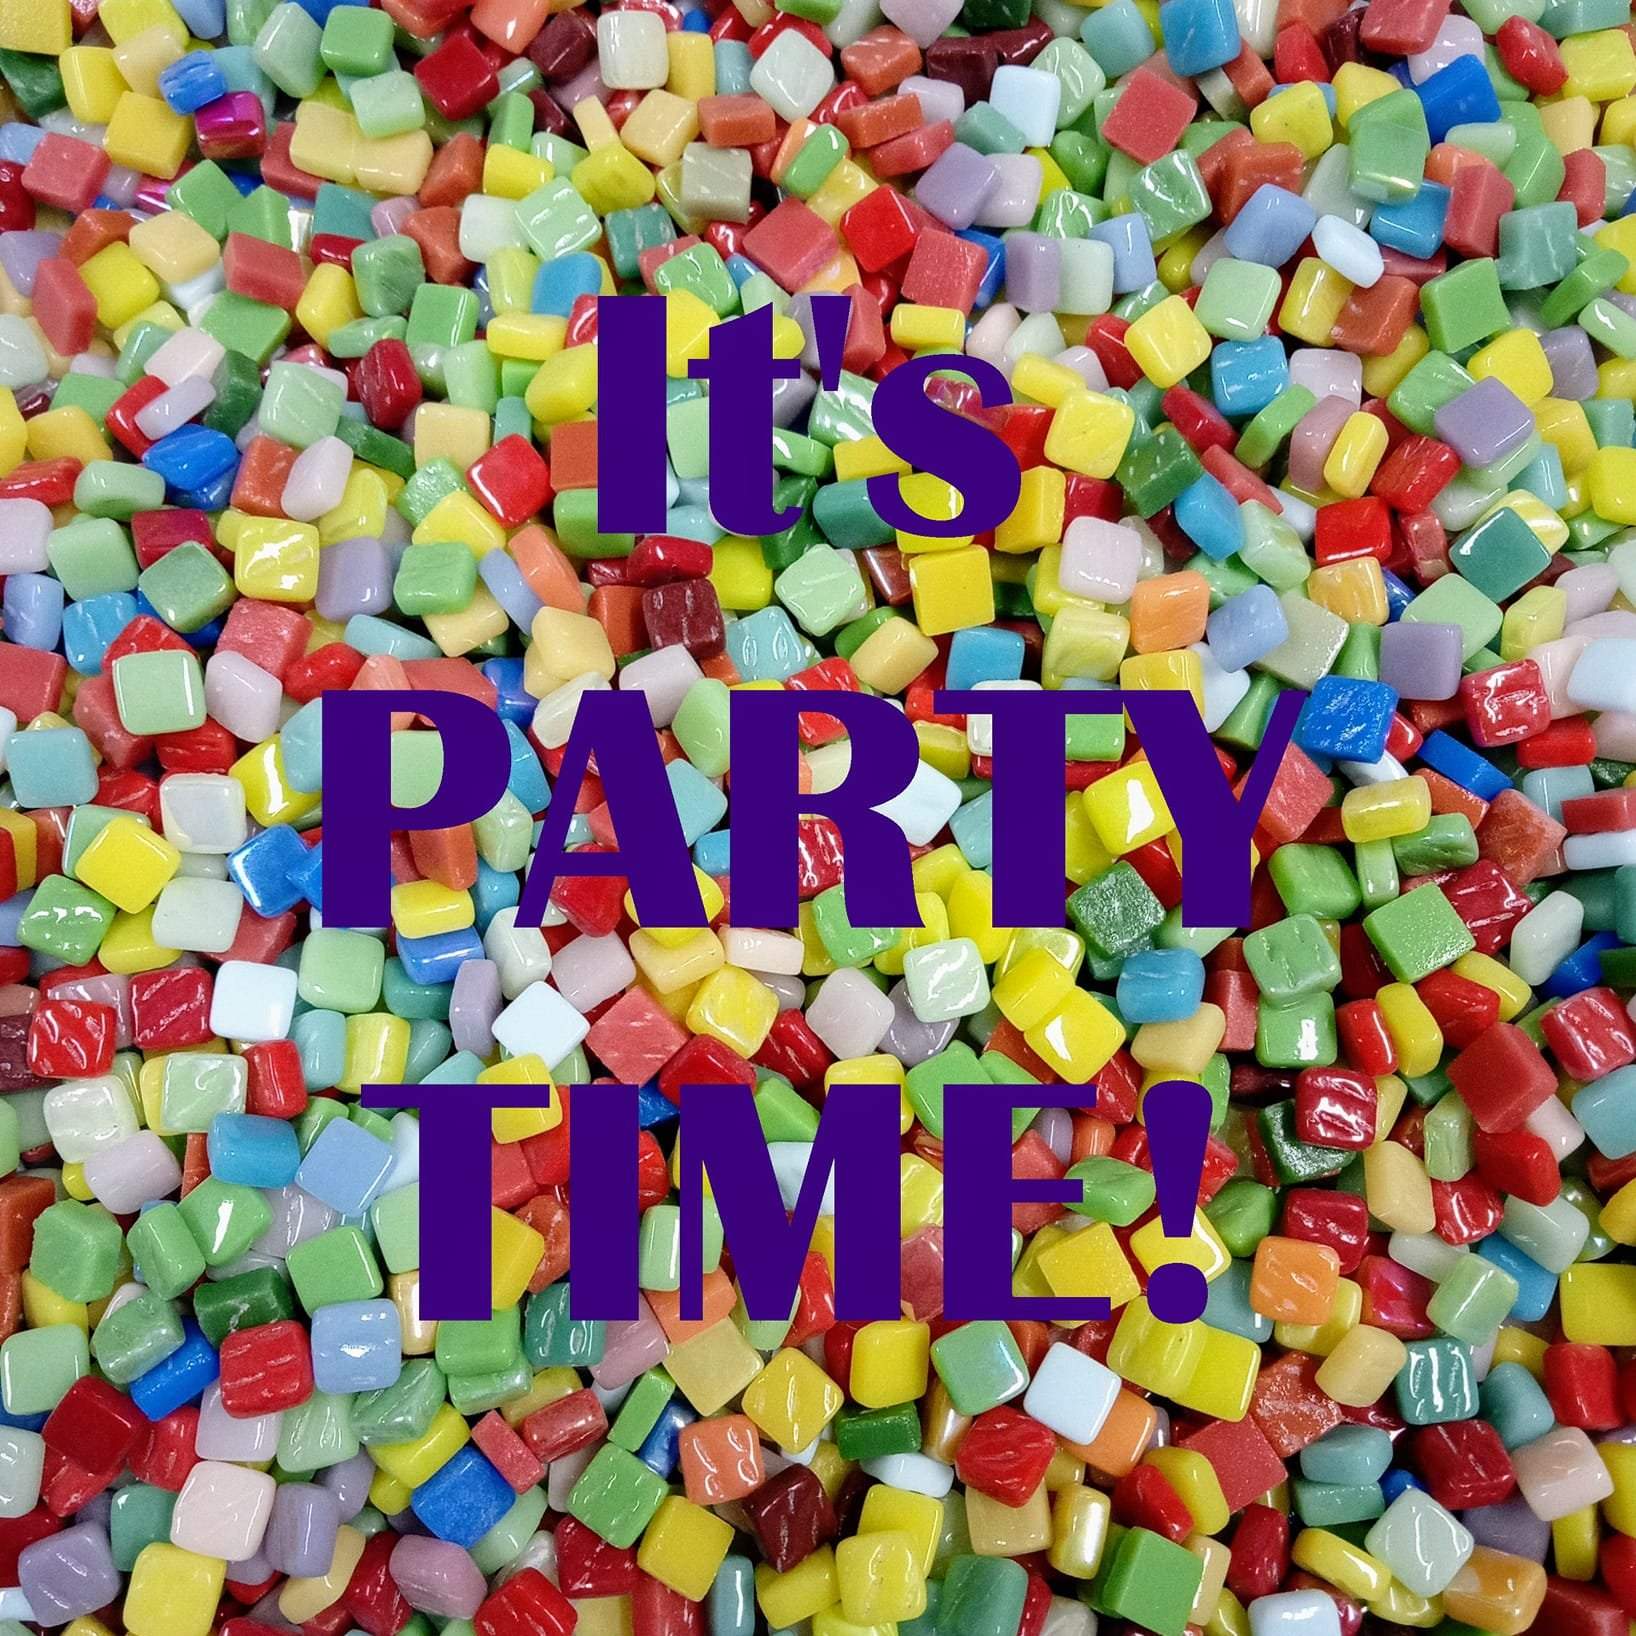 Mozaieksteentjes in verschillende kleuren met daaroverheen in paarse letters de tekst "It's party time".